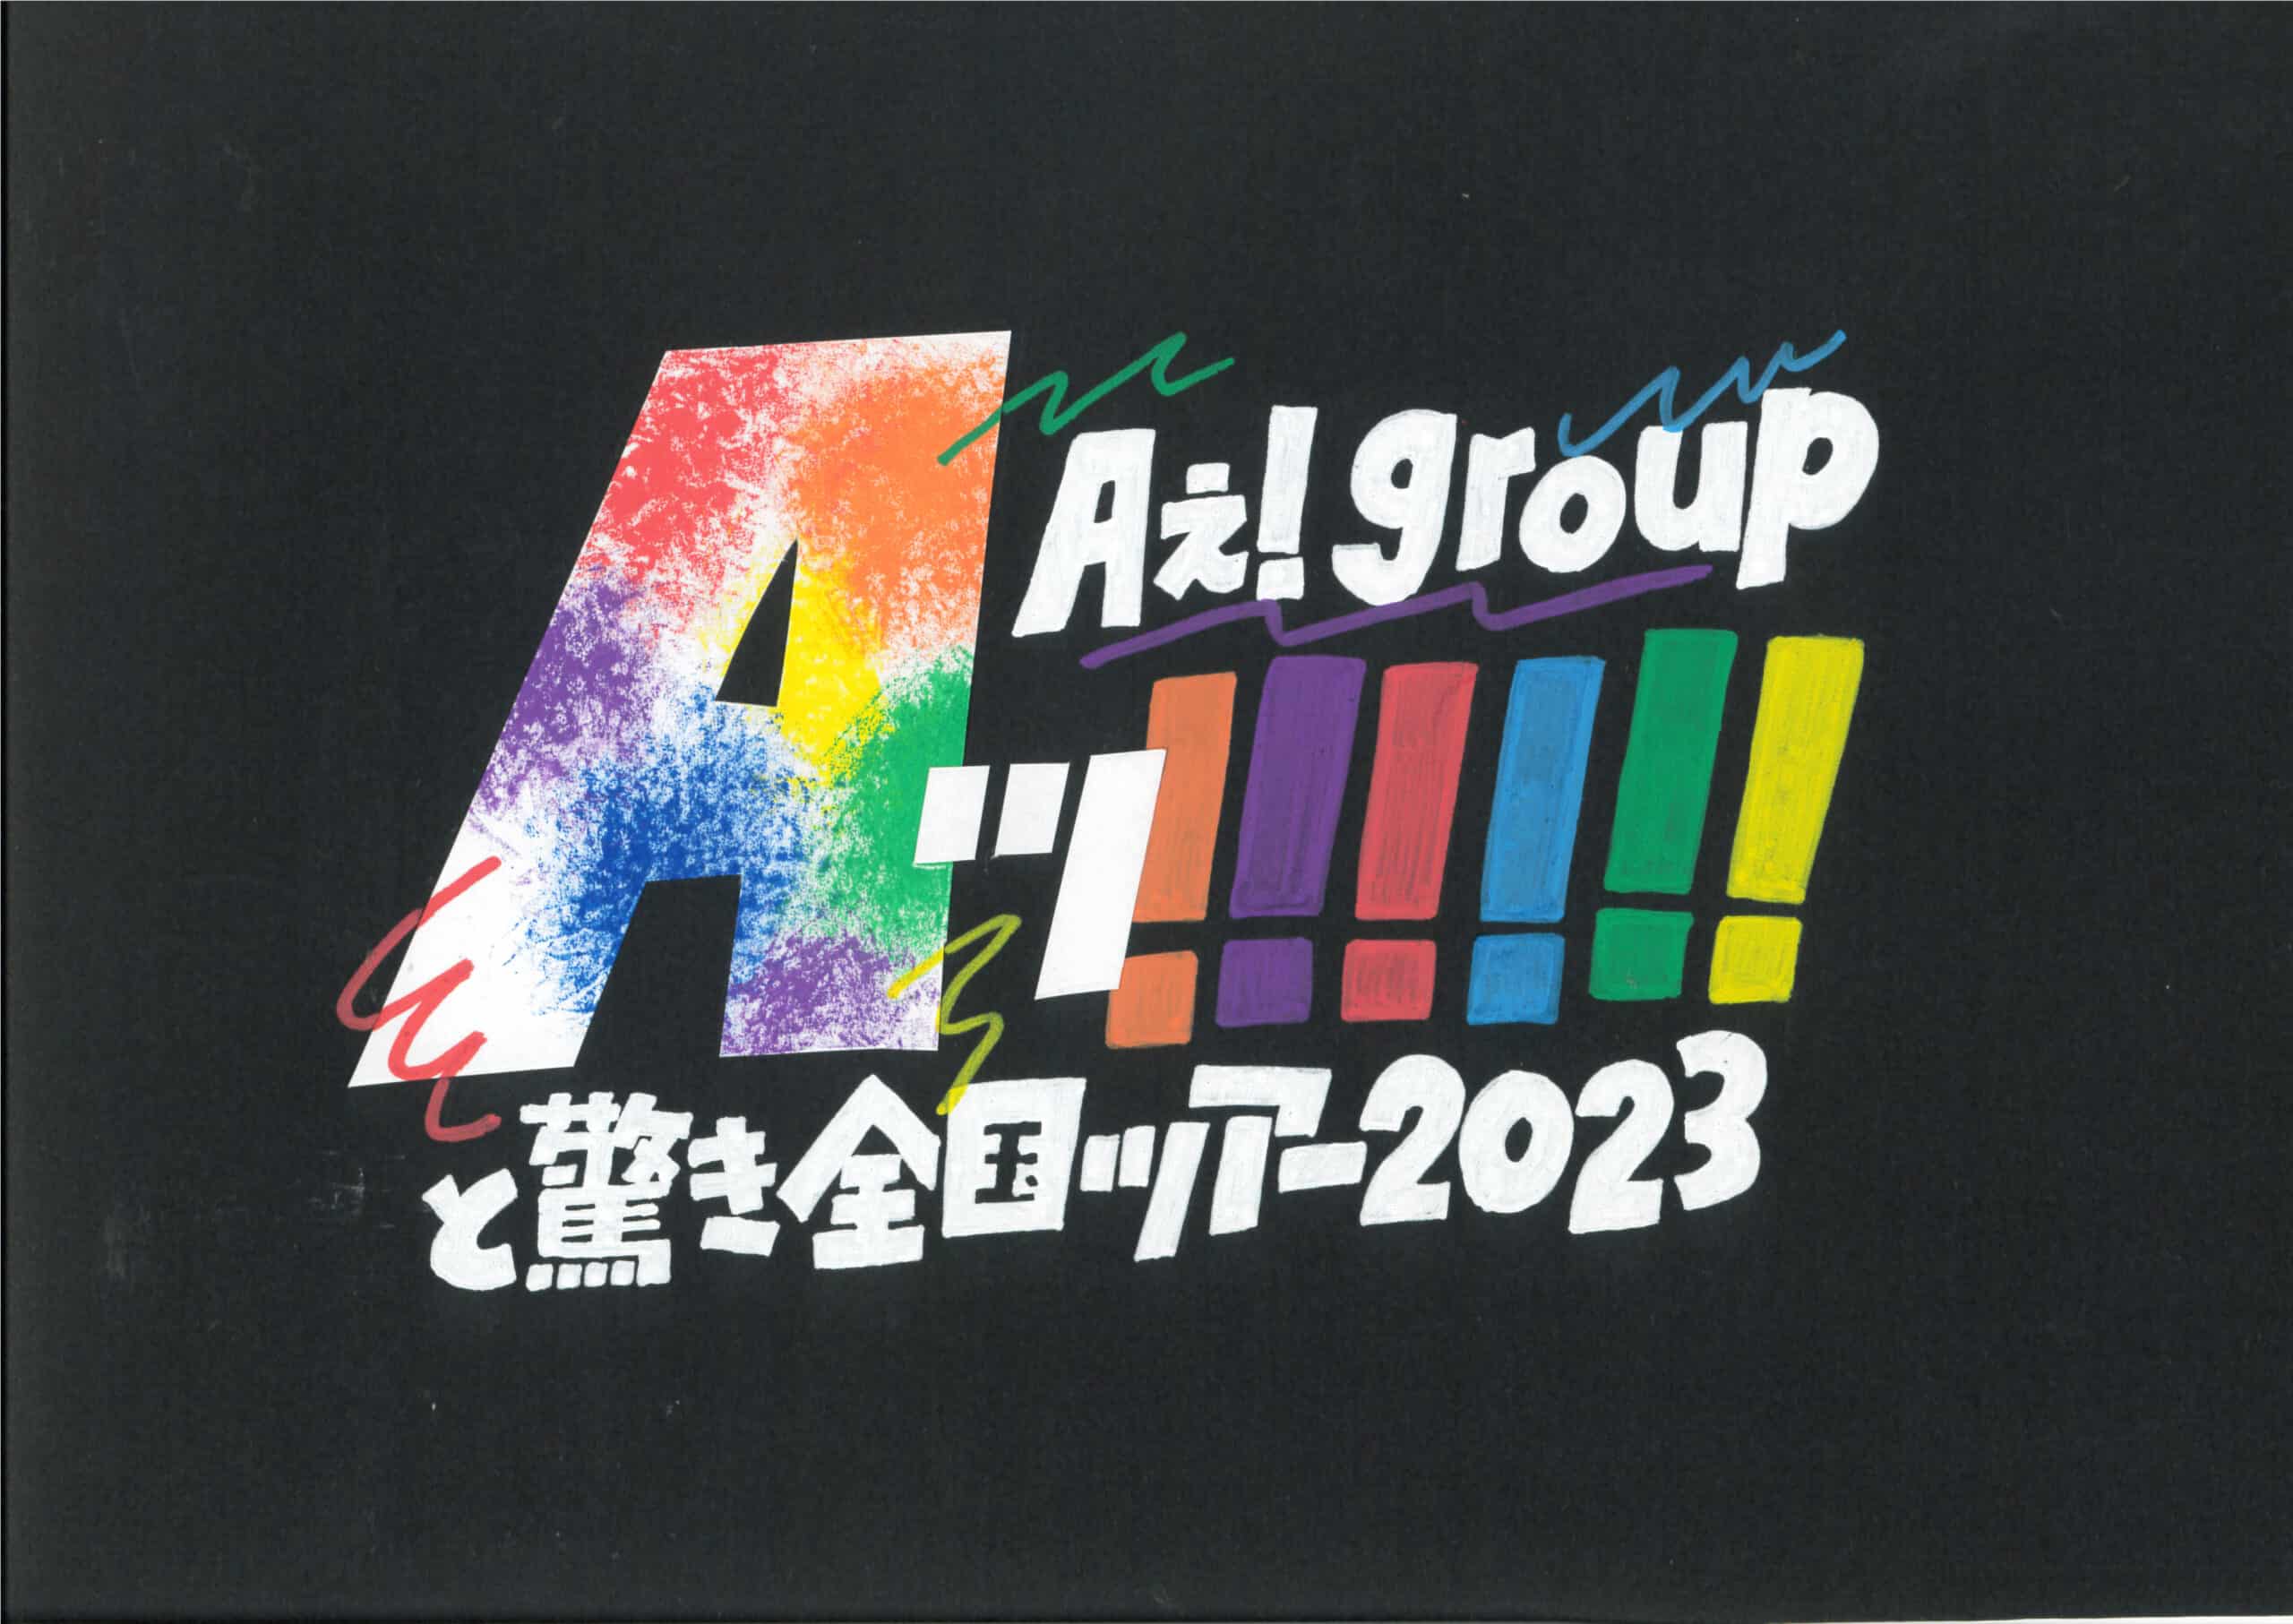 Aぇ! group ツアー「Aッ!!!!!!と驚き全国ツアー2023」(2023)(日程 